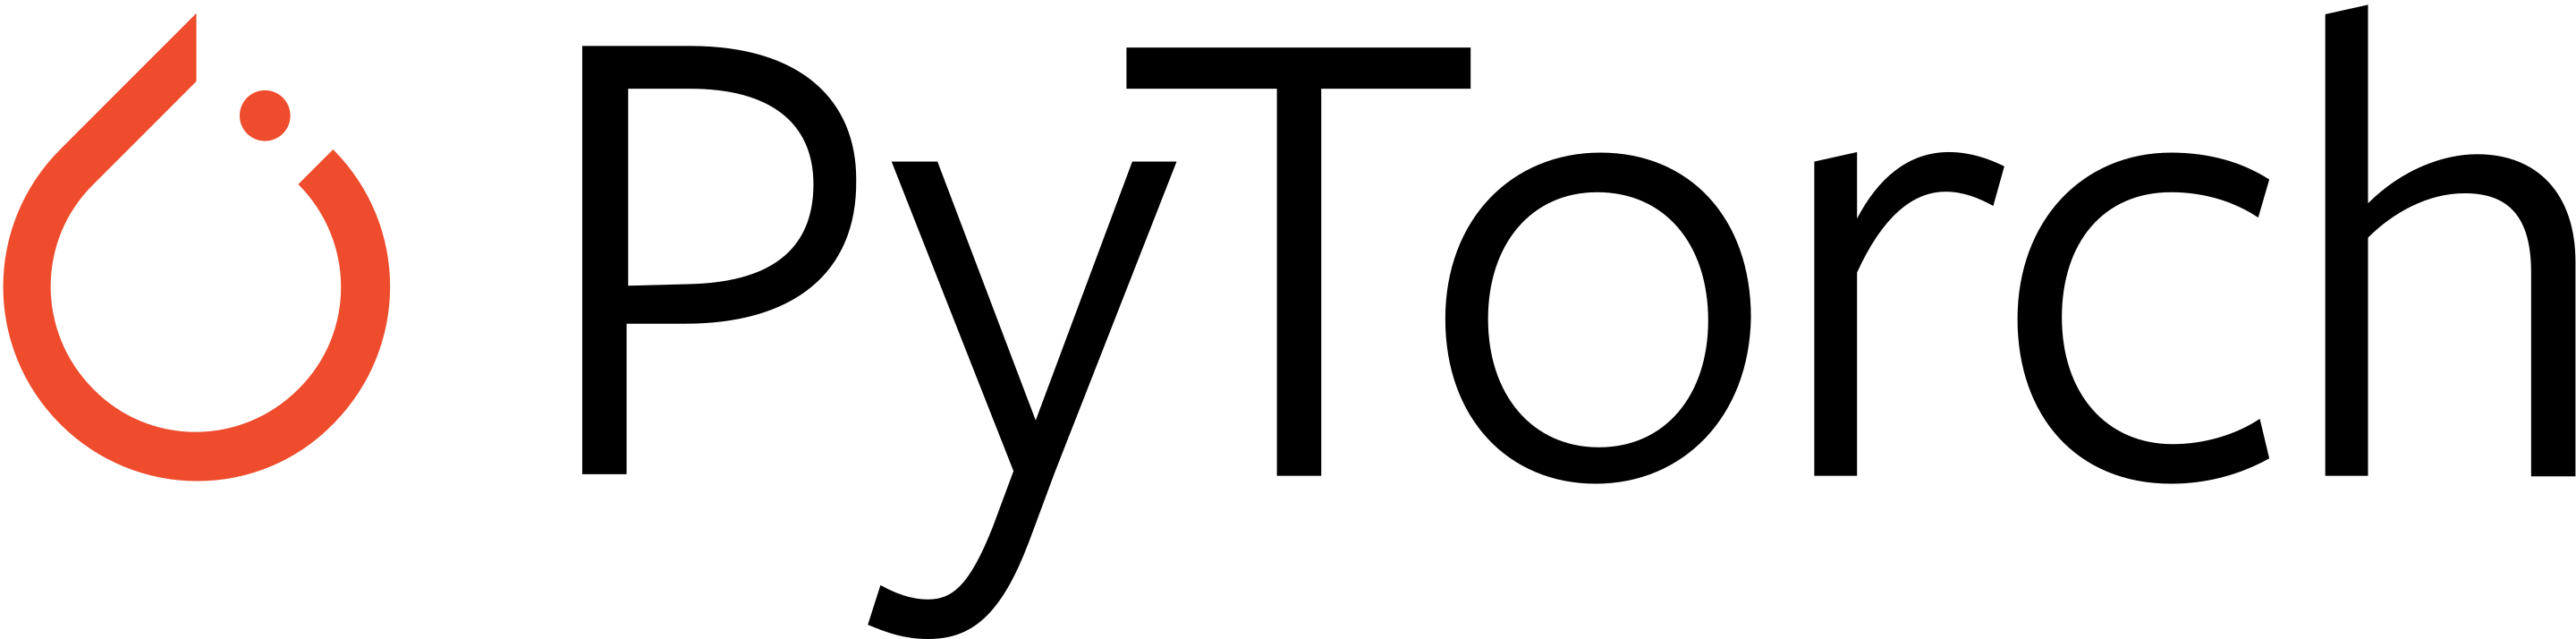 Py torch. PYTORCH. PYTORCH logo. PYTORCH icon. PYTORCH logo PNG.